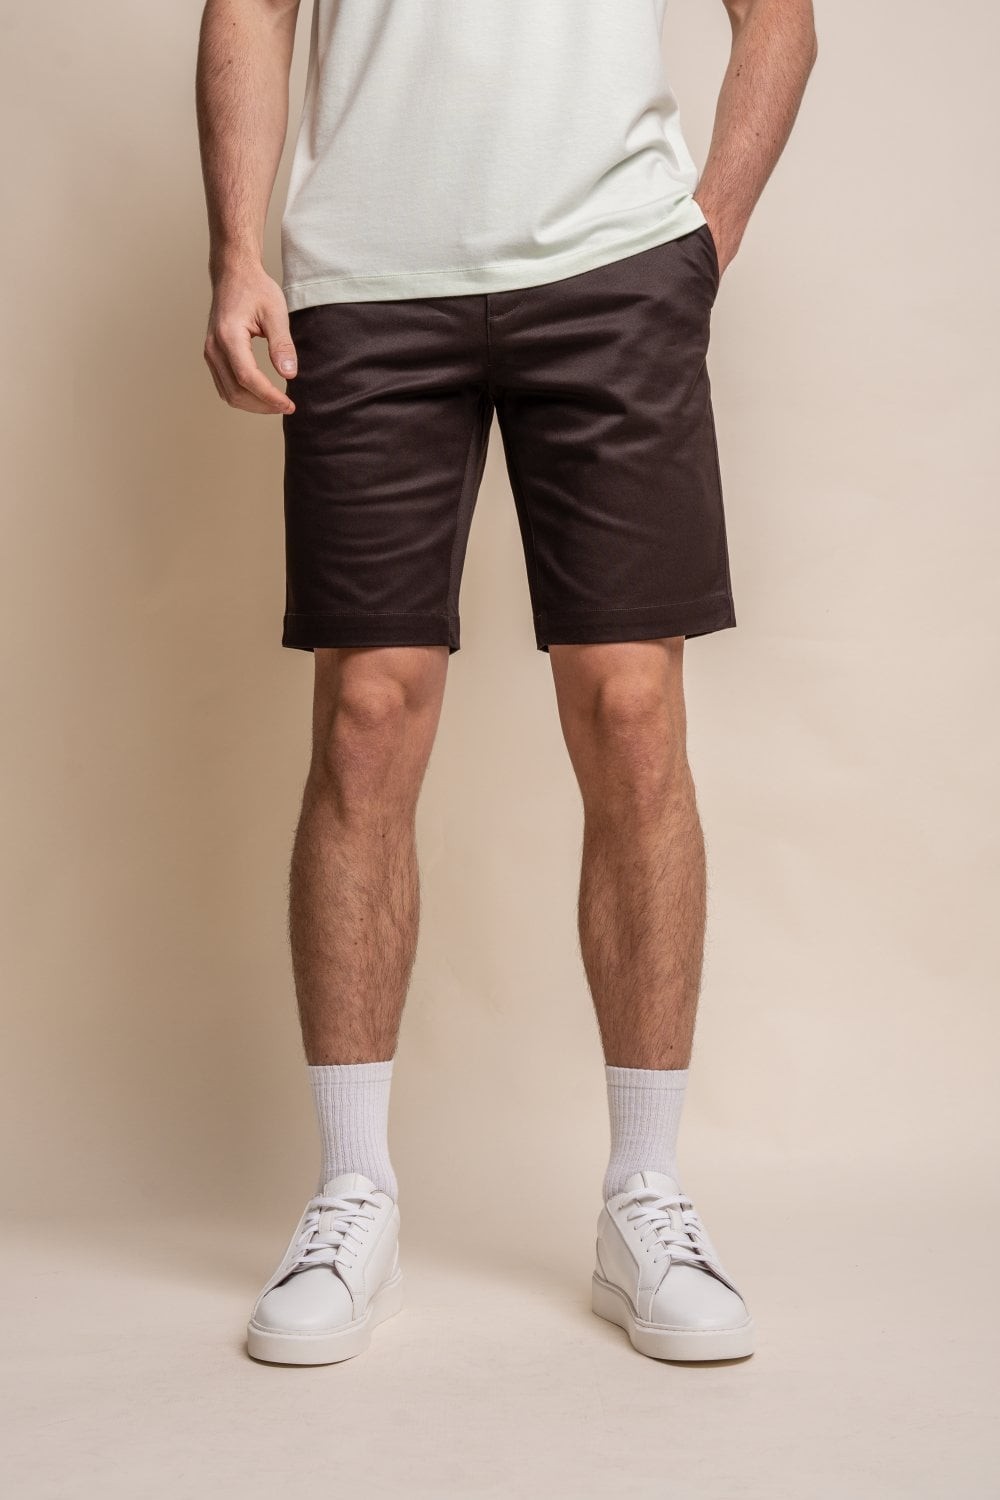 Shorts chino décontractés en coton pour hommes - DAKOTA - Chocolate Brown